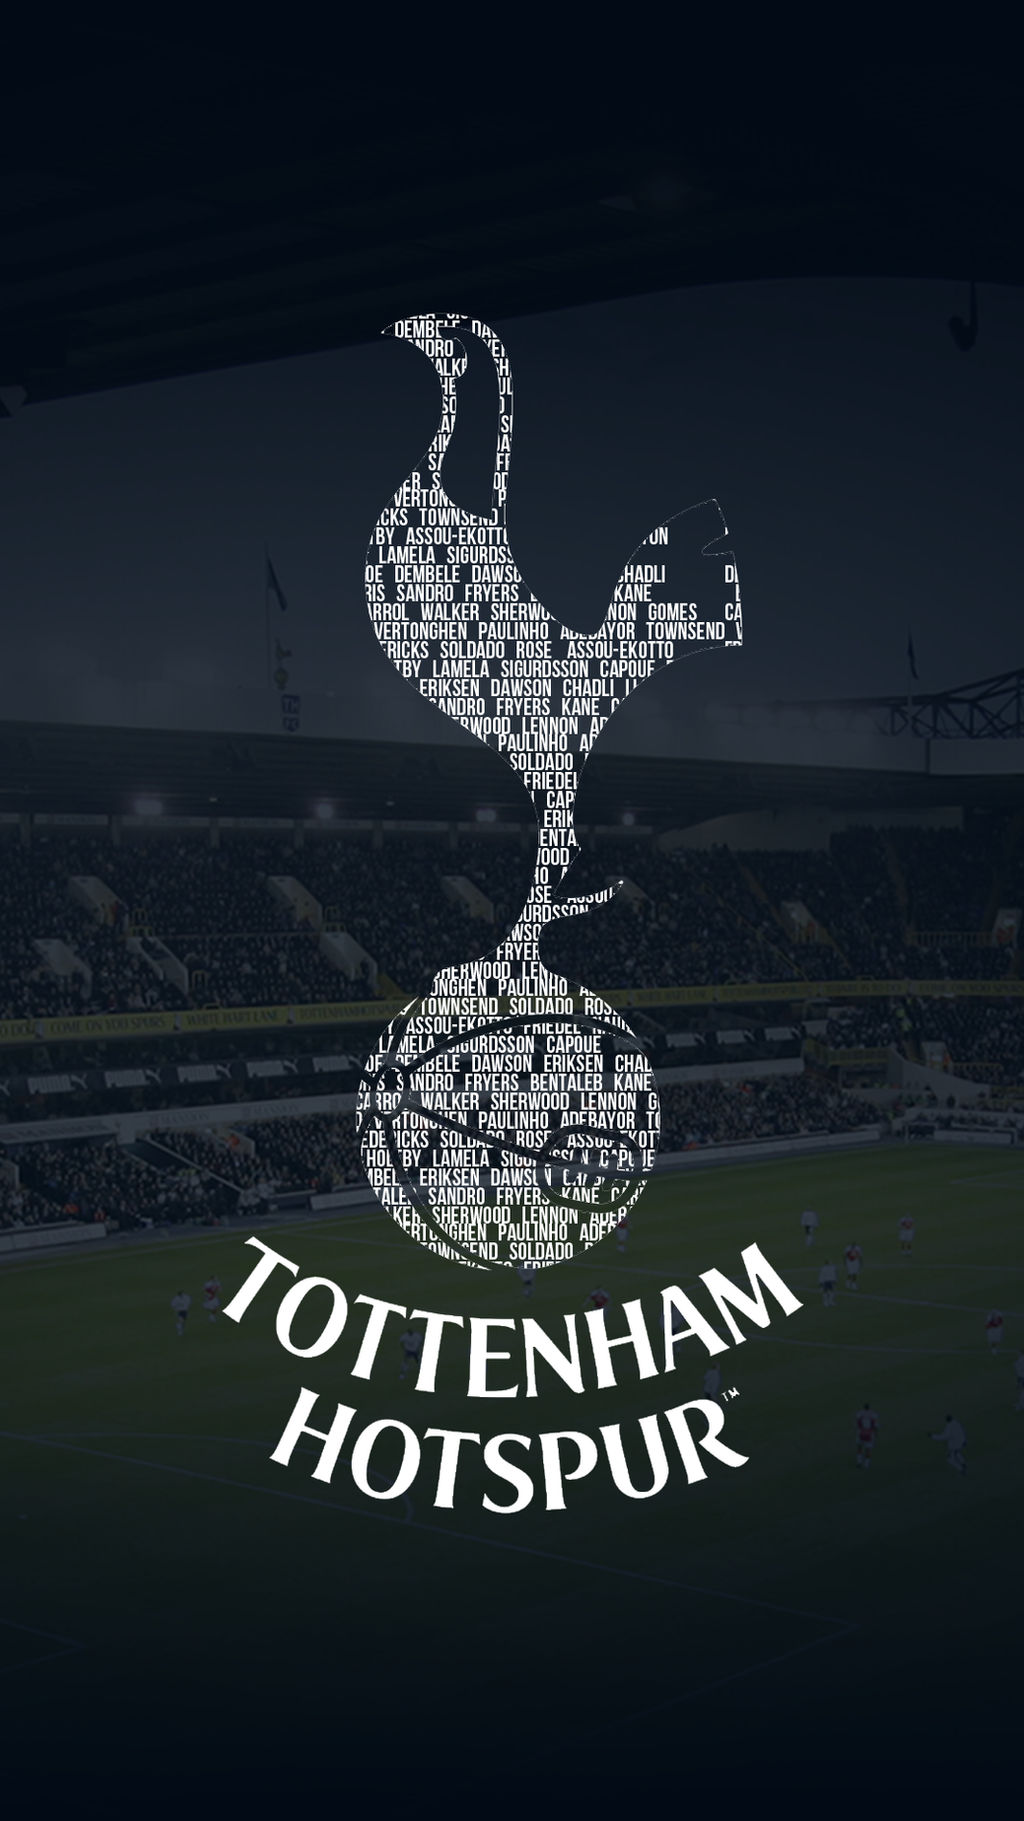 Tottenham Hotspur wallpaper - phone by donioli on DeviantArt